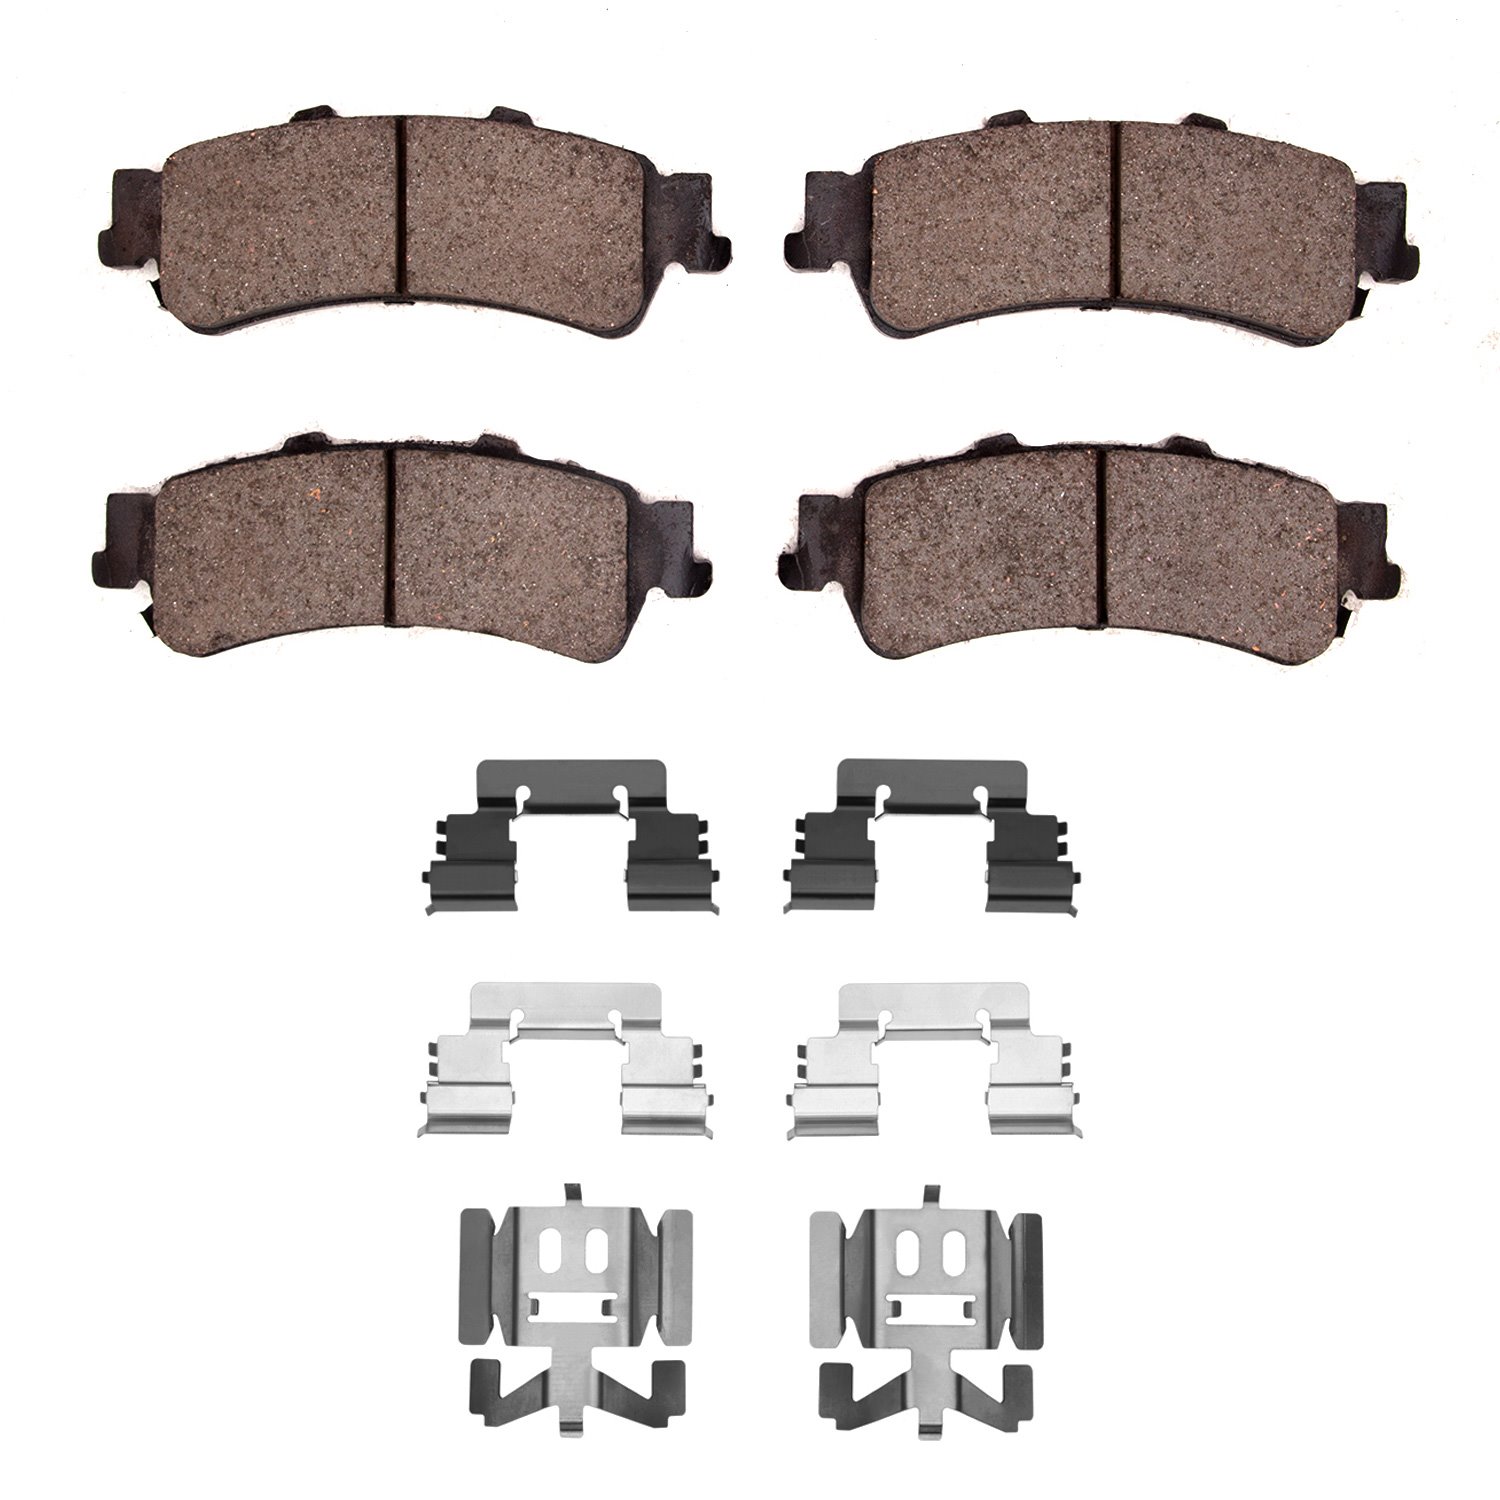 1310-0792-01 3000-Series Ceramic Brake Pads & Hardware Kit, 1999-2011 GM, Position: Rear